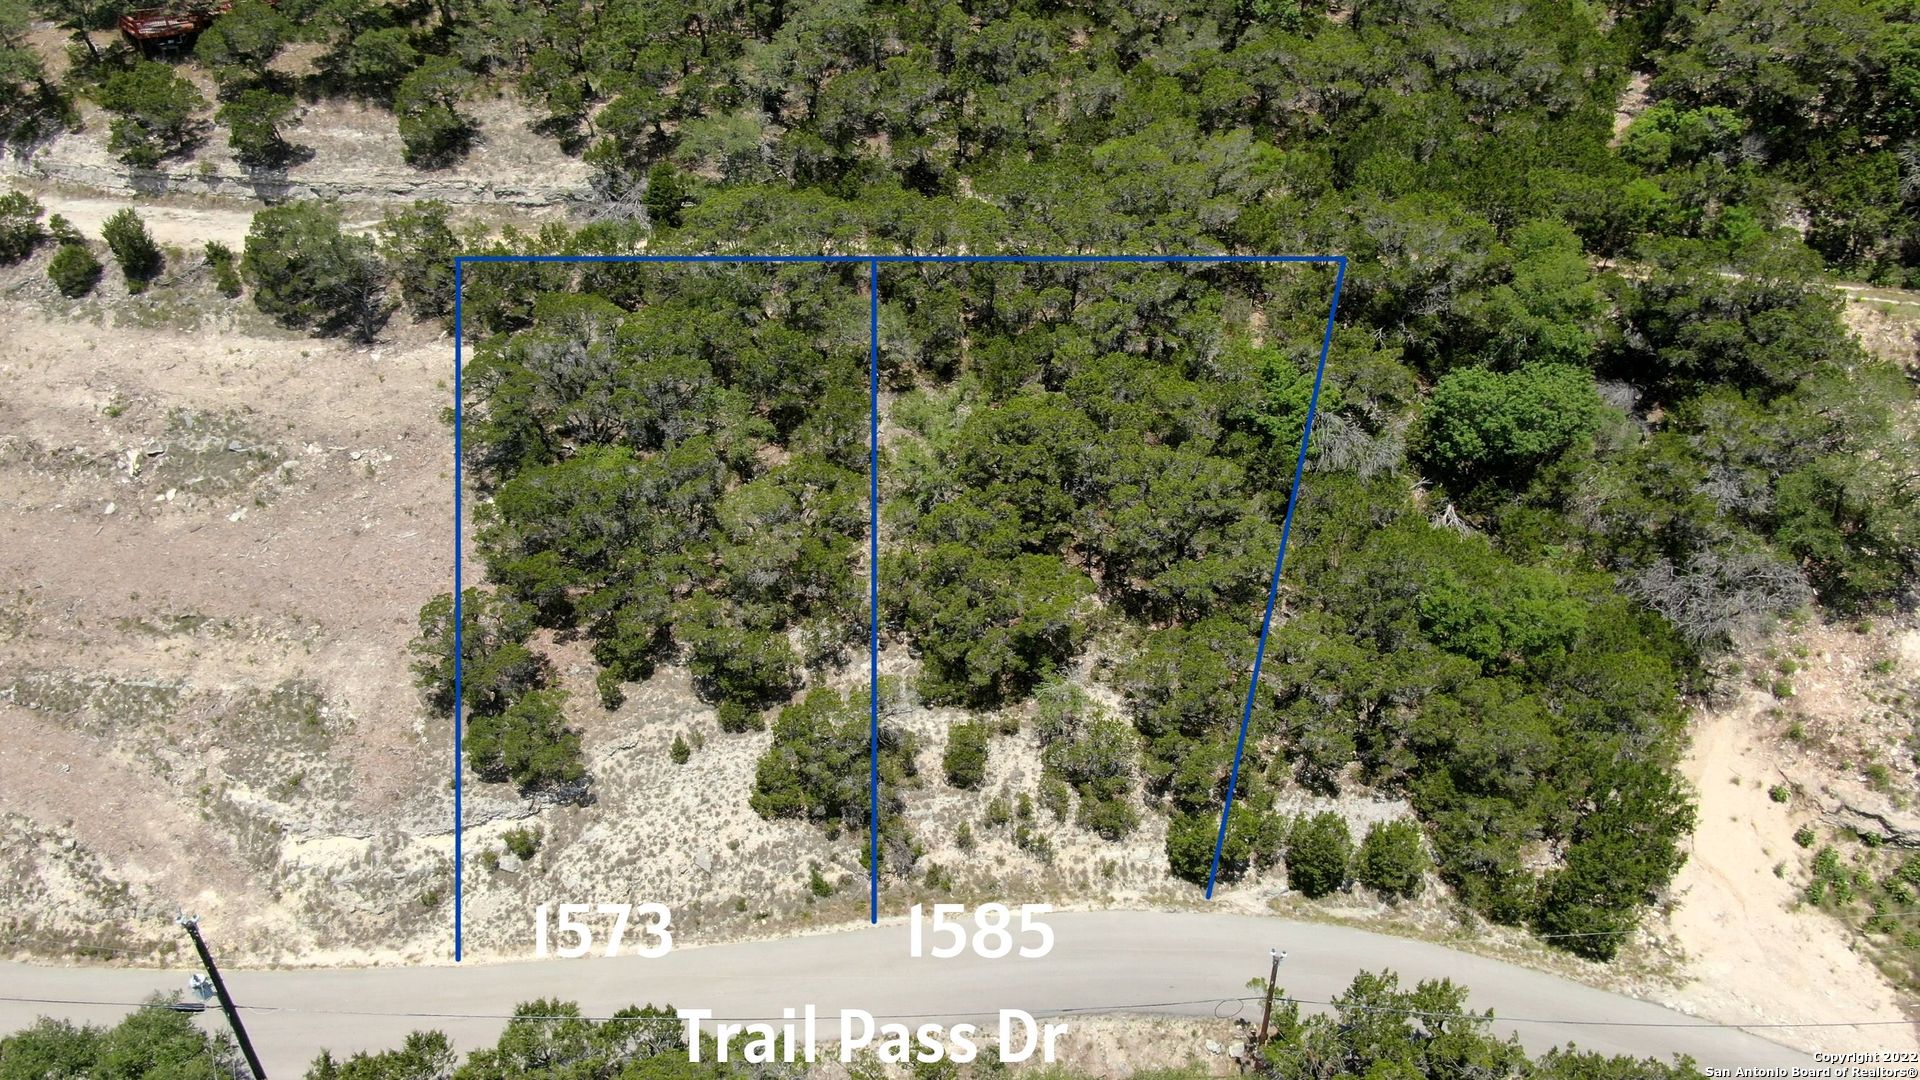 1585 Trail Pass Dr, Canyon Lake, TX 78133